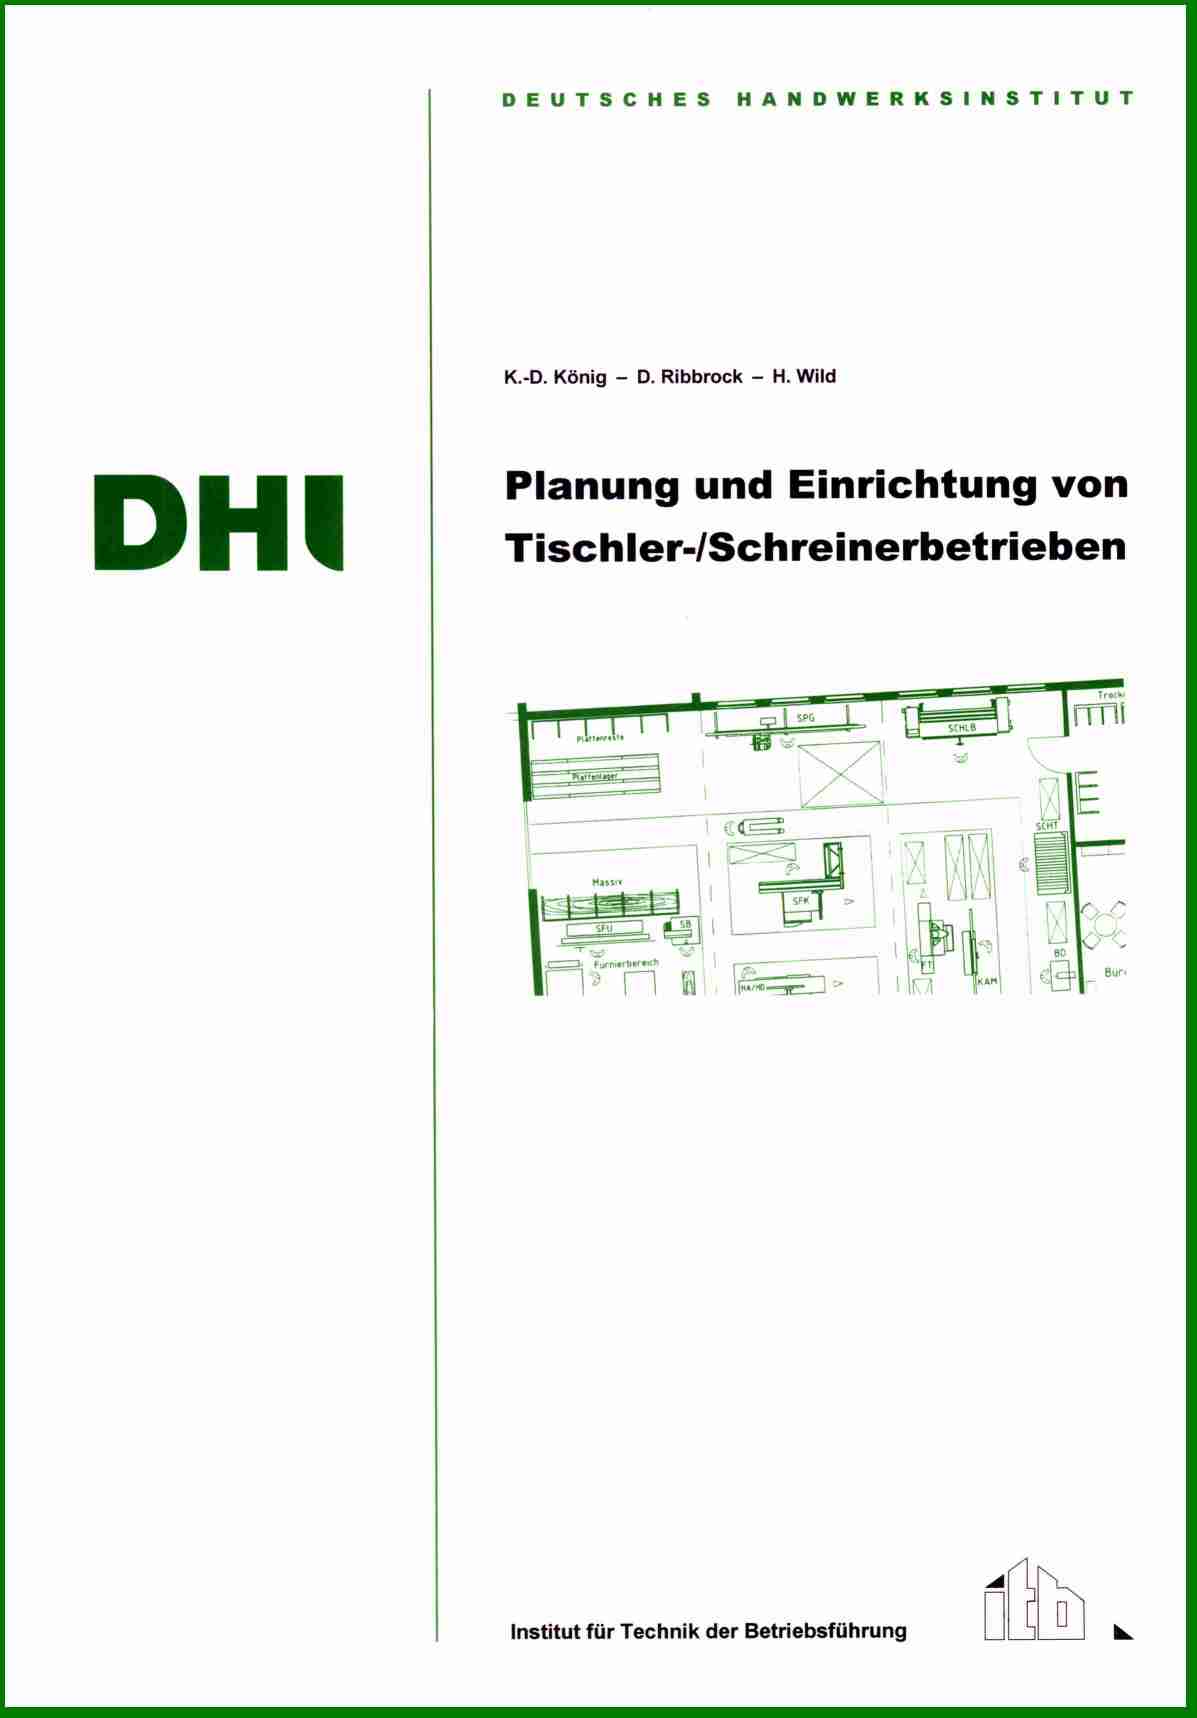 Planung und Einrichtung von Tischler-/Schreinerbetrieben